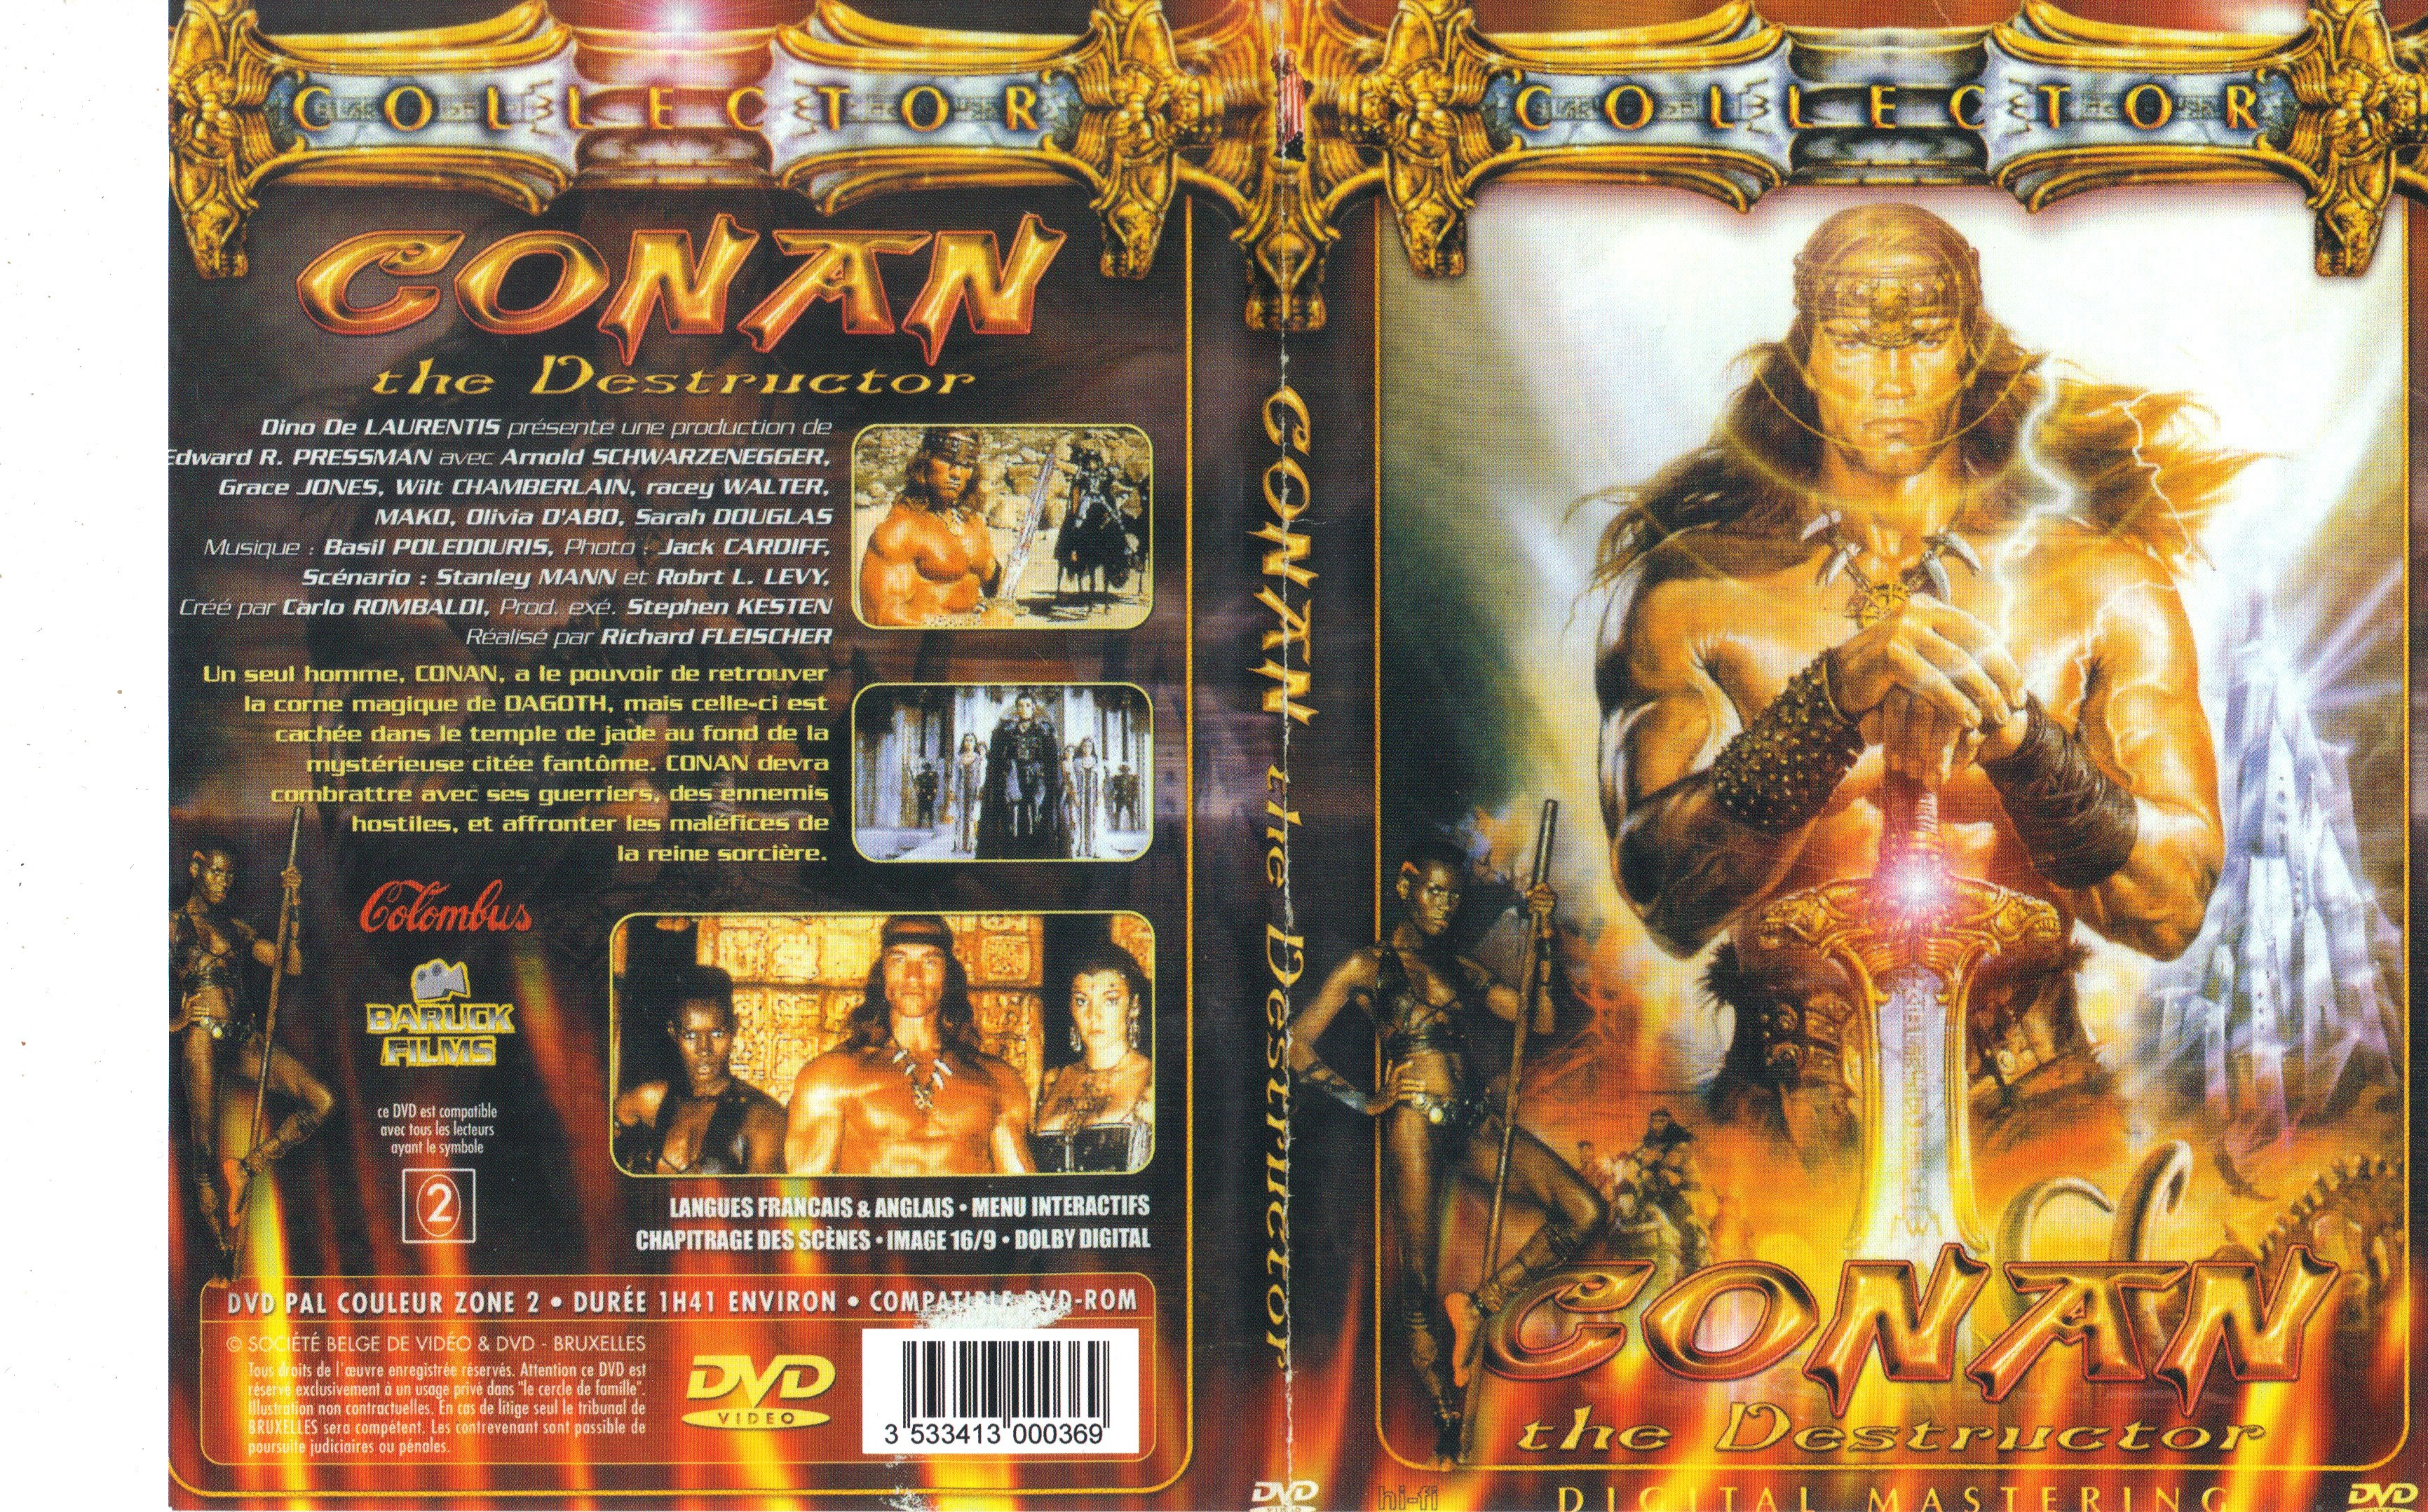 Jaquette DVD Conan le destructeur v3